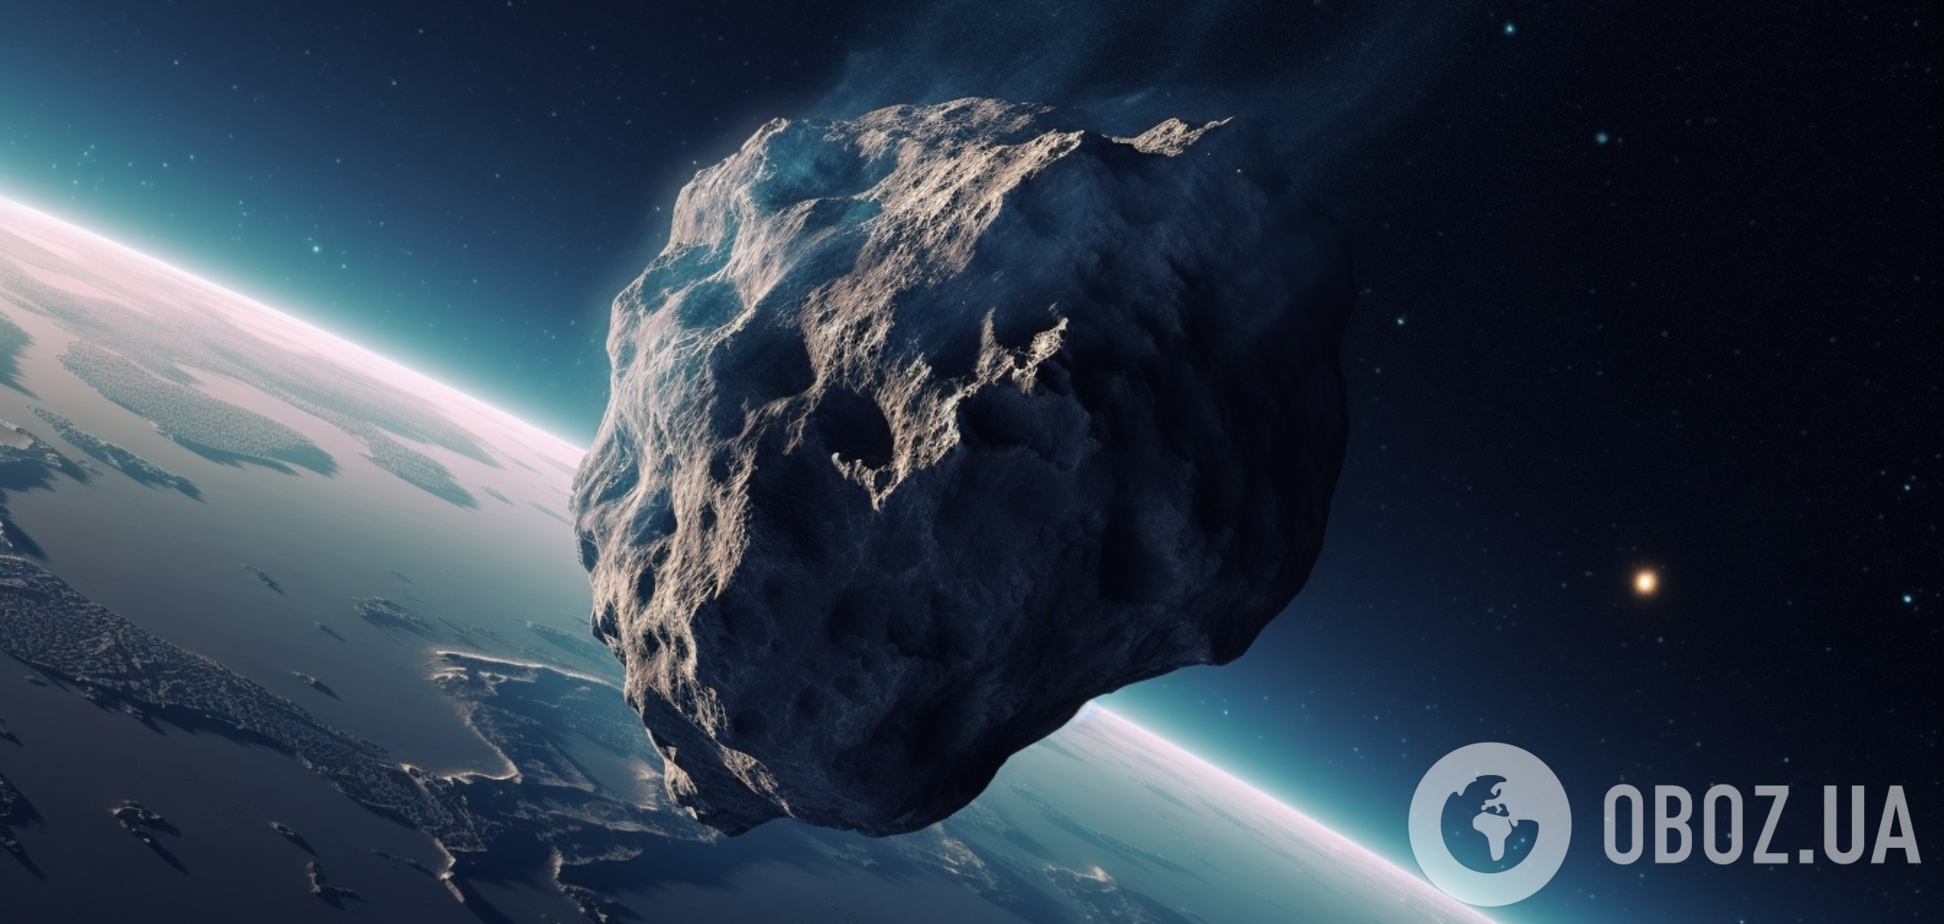 Подбитый NASA астероид Диморфос начал вести себя хаотично и, вероятно, падает: ученые предположили, что происходит